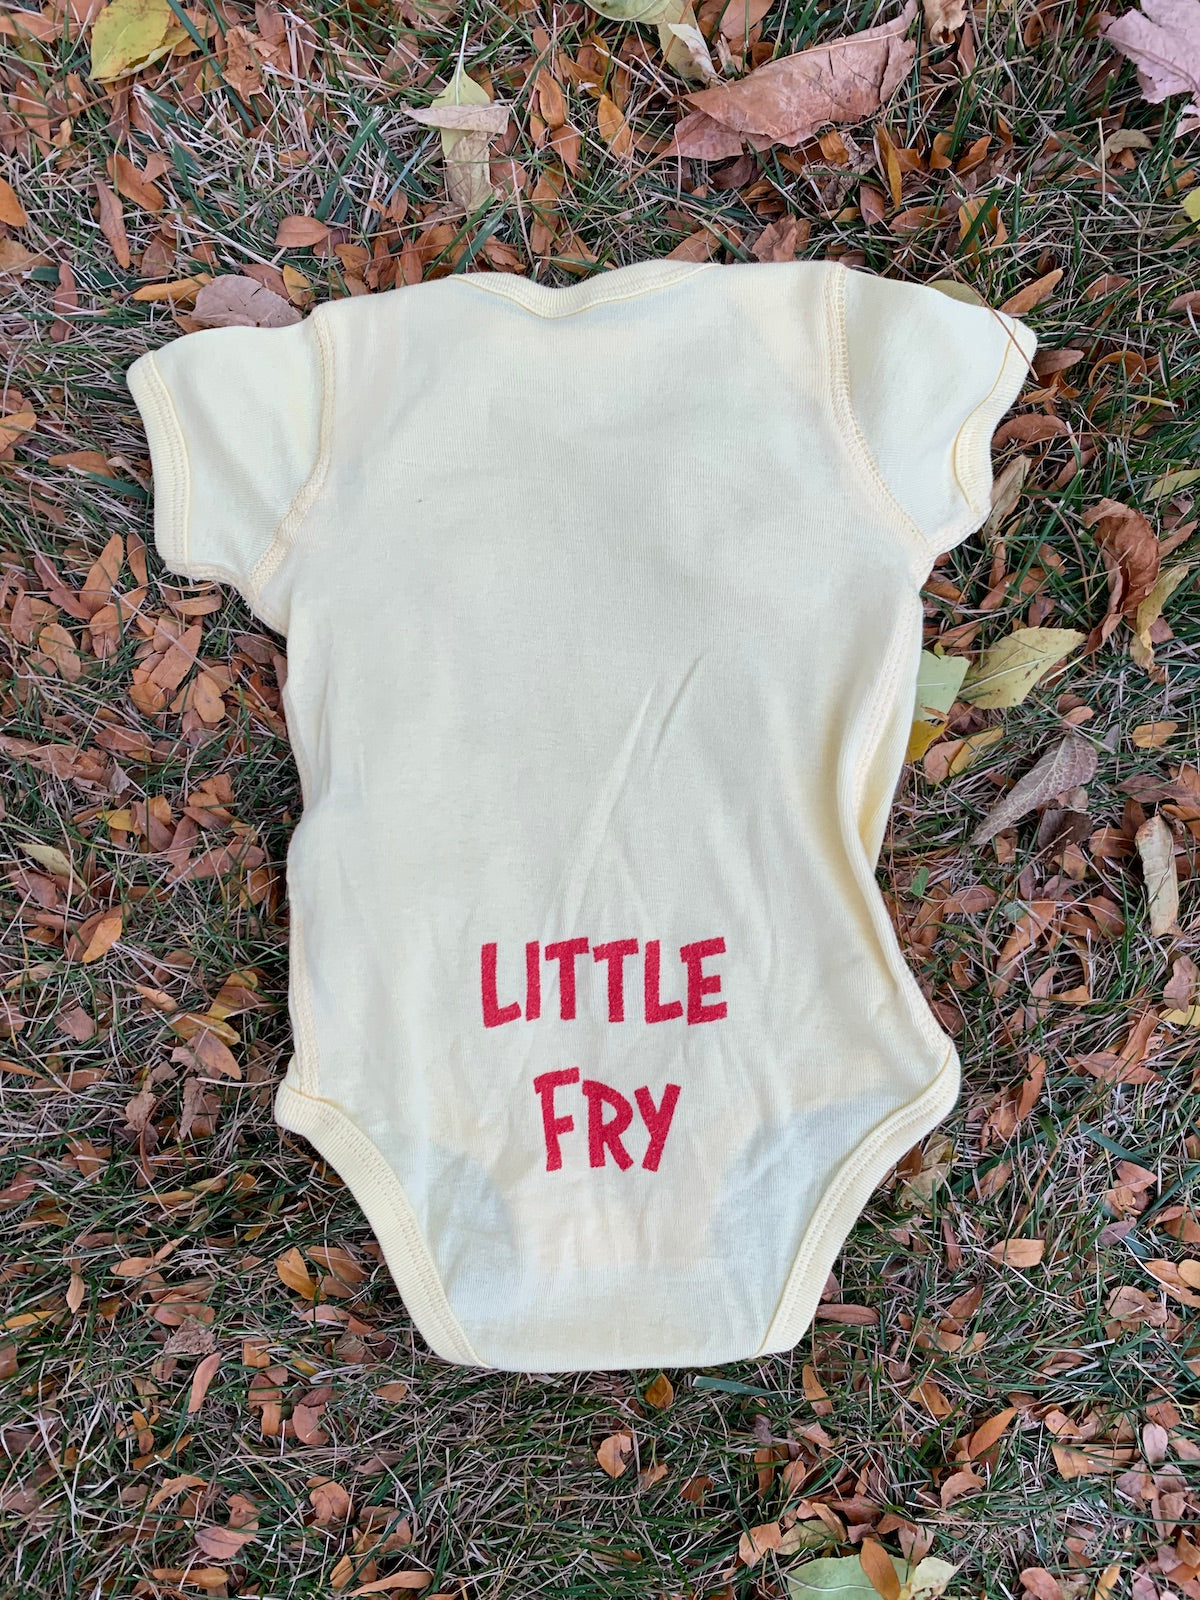 little fry x logo - 100% cotton baby onesie